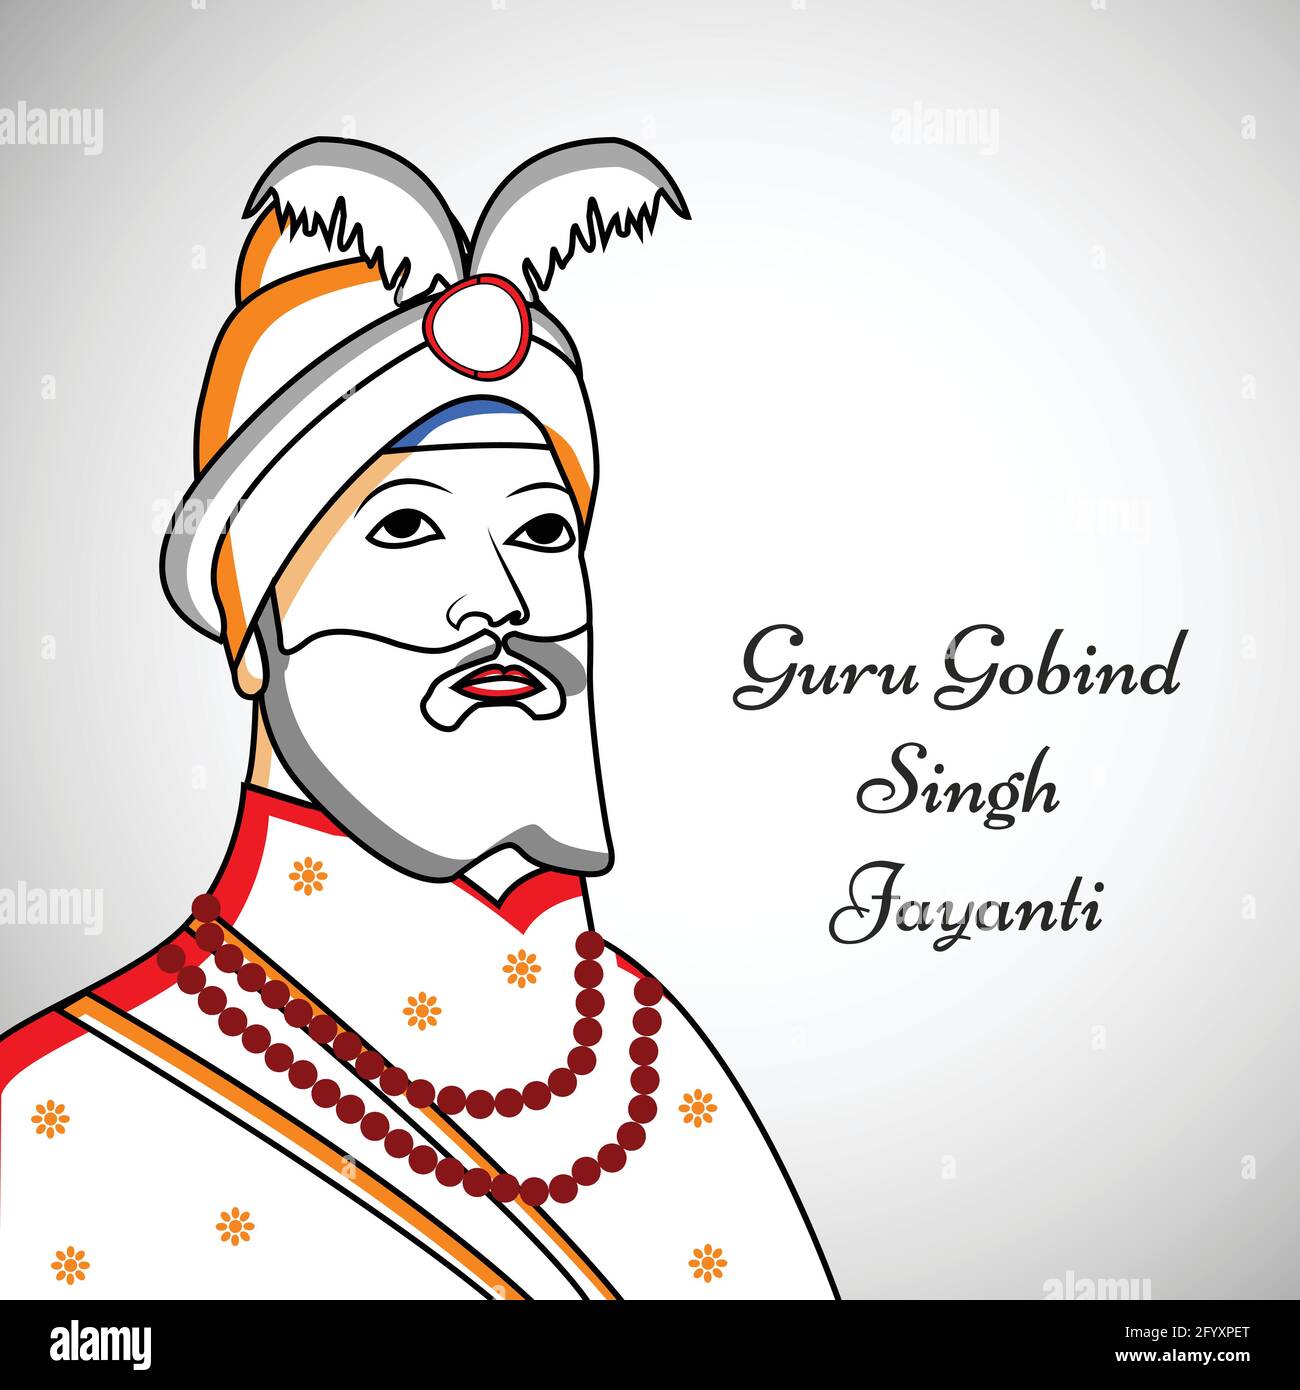 Guru Gobind Singh Jayanti Stock Vector Image & Art - Alamy